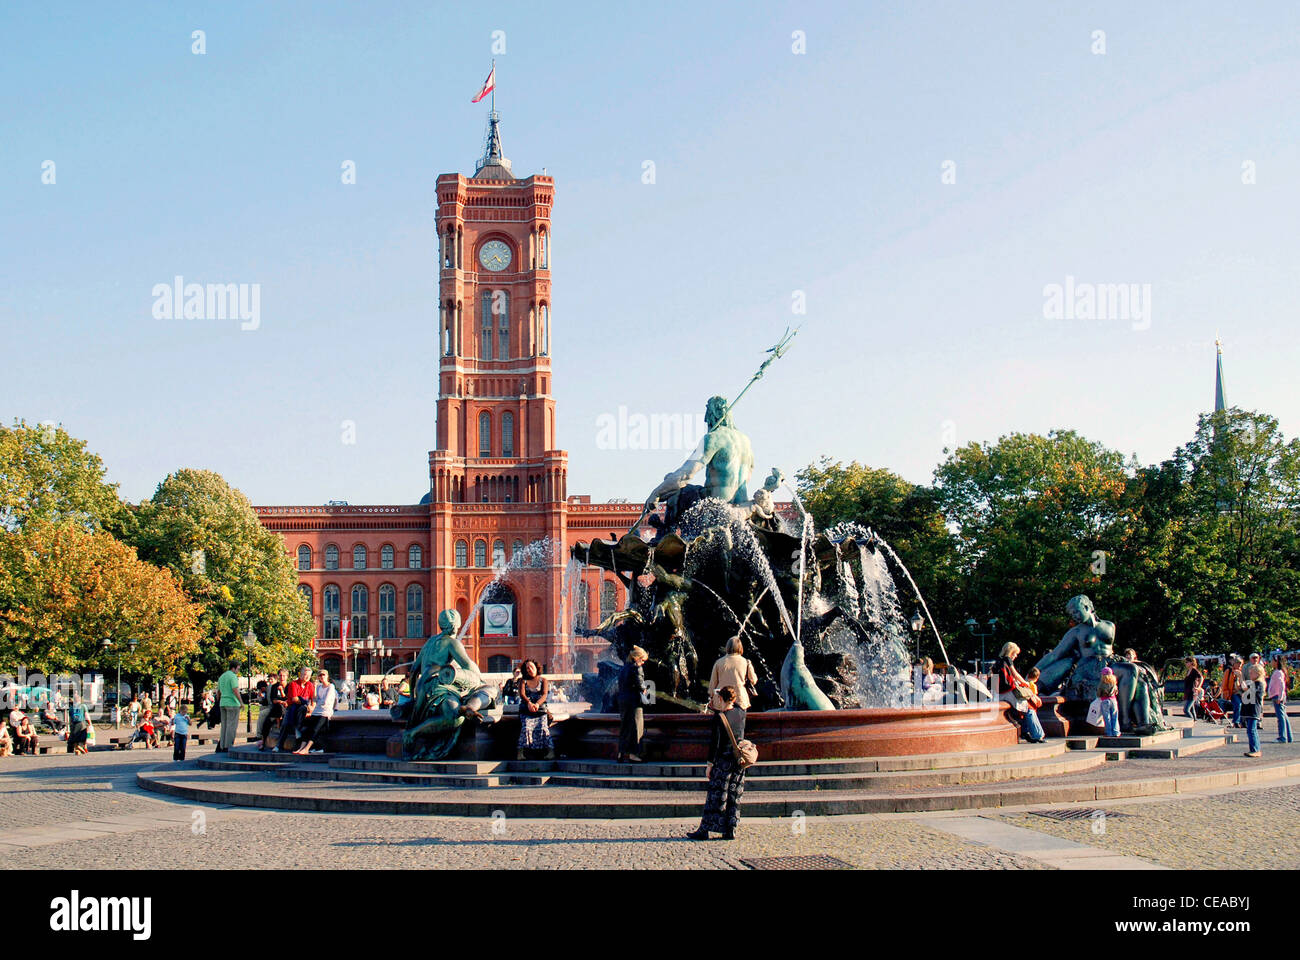 L'Hôtel de ville rouge à Berlin : Résidence du maire et le siège de l'administration de l'état fédéral de Berlin. Banque D'Images